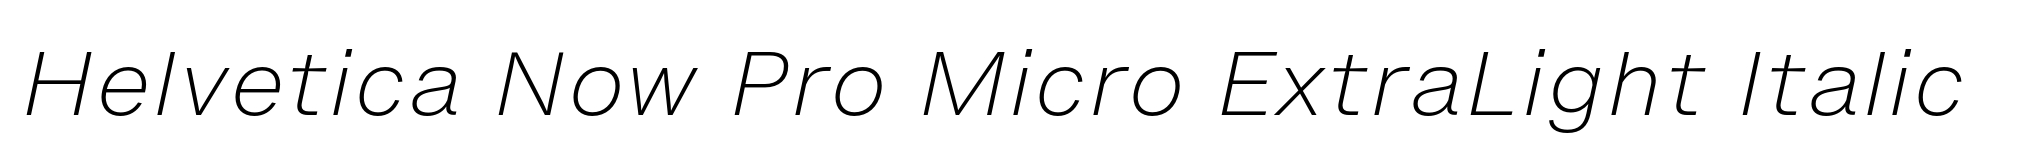 Helvetica Now Pro Micro ExtraLight Italic image